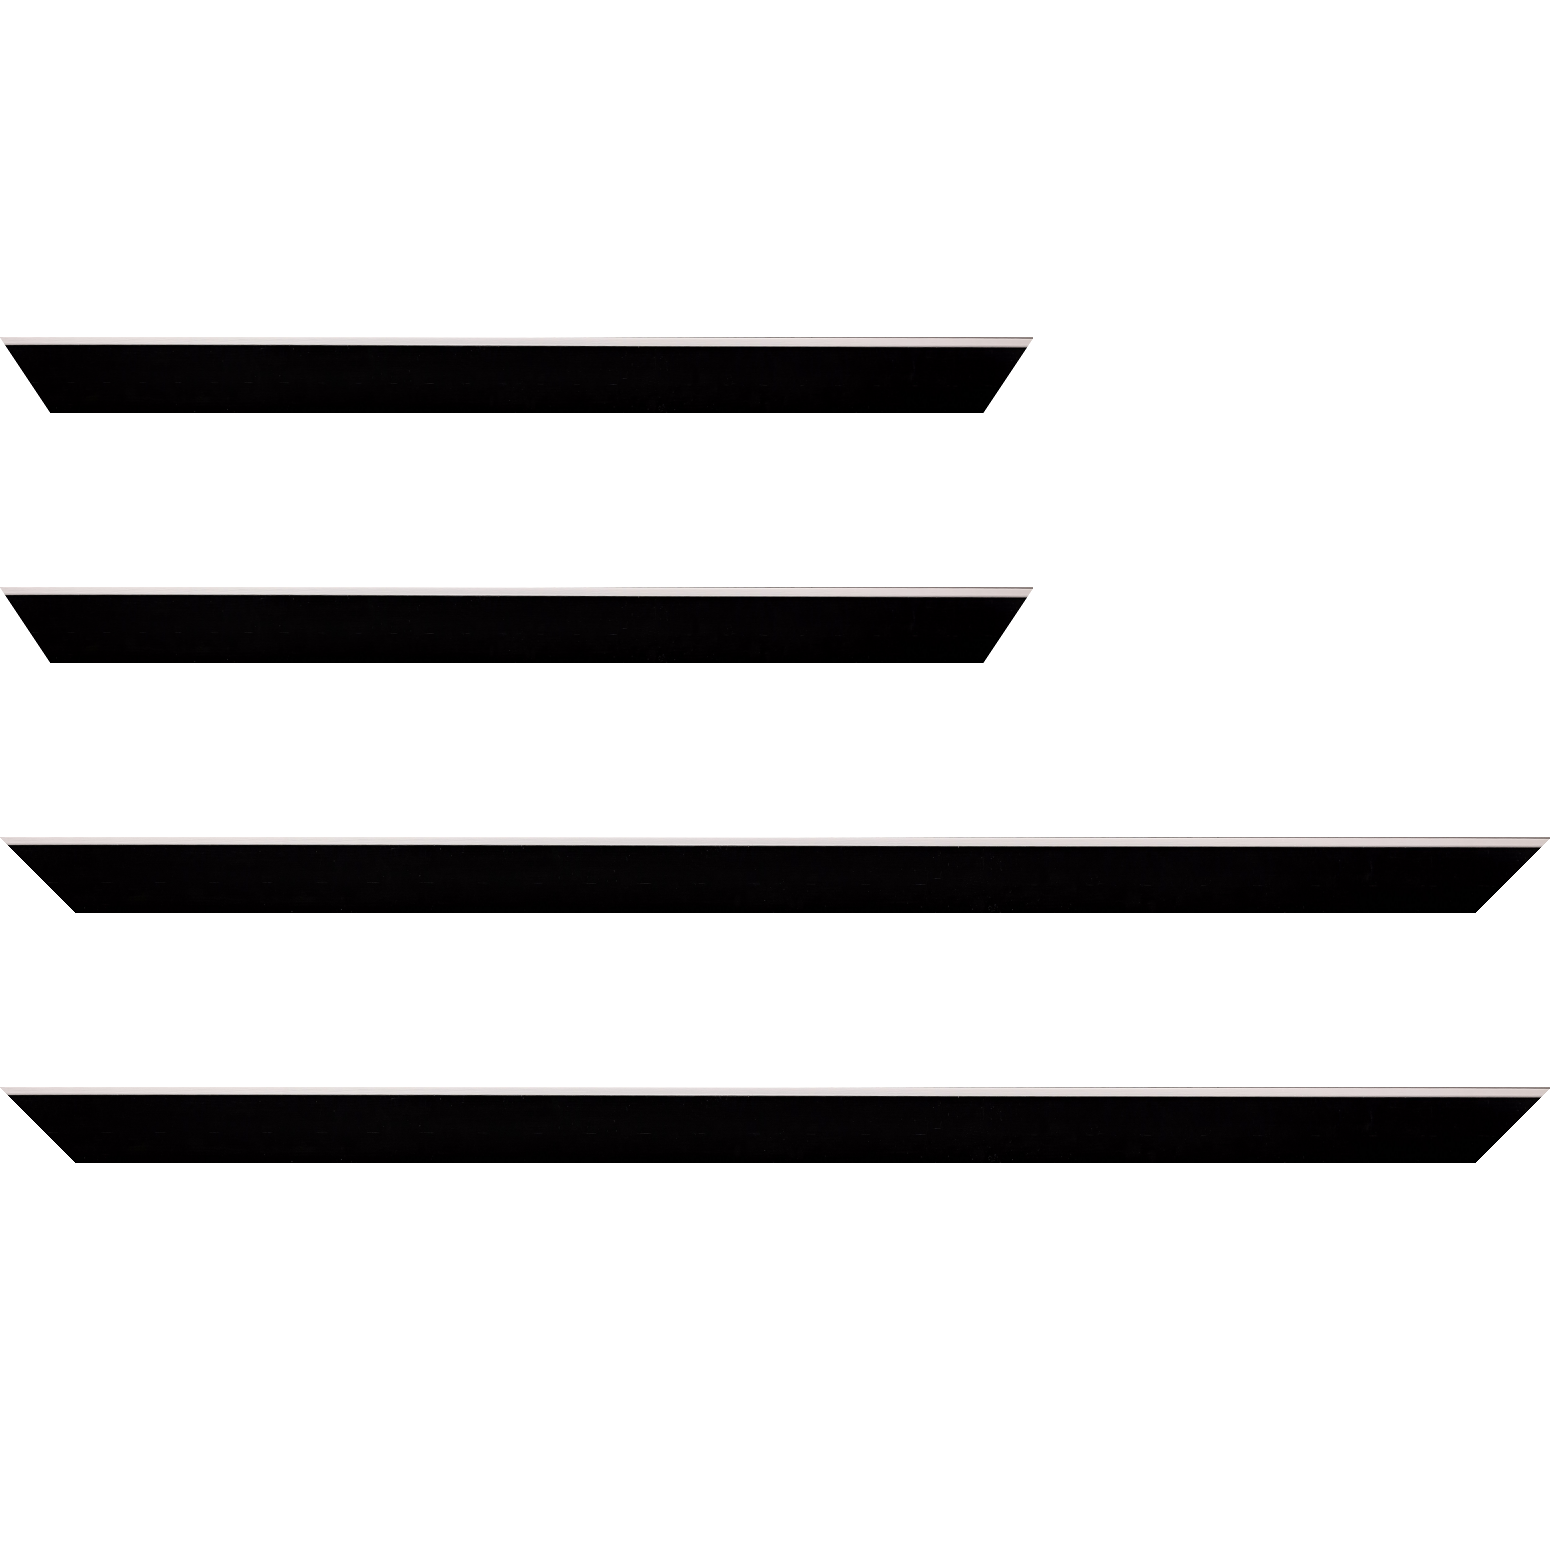 Baguette bois profil arrondi en pente plongeant largeur 2.4cm couleur noir satiné,veine du bois  apparent (pin) , angle du cadre extérieur filet argent chromé - 24x30